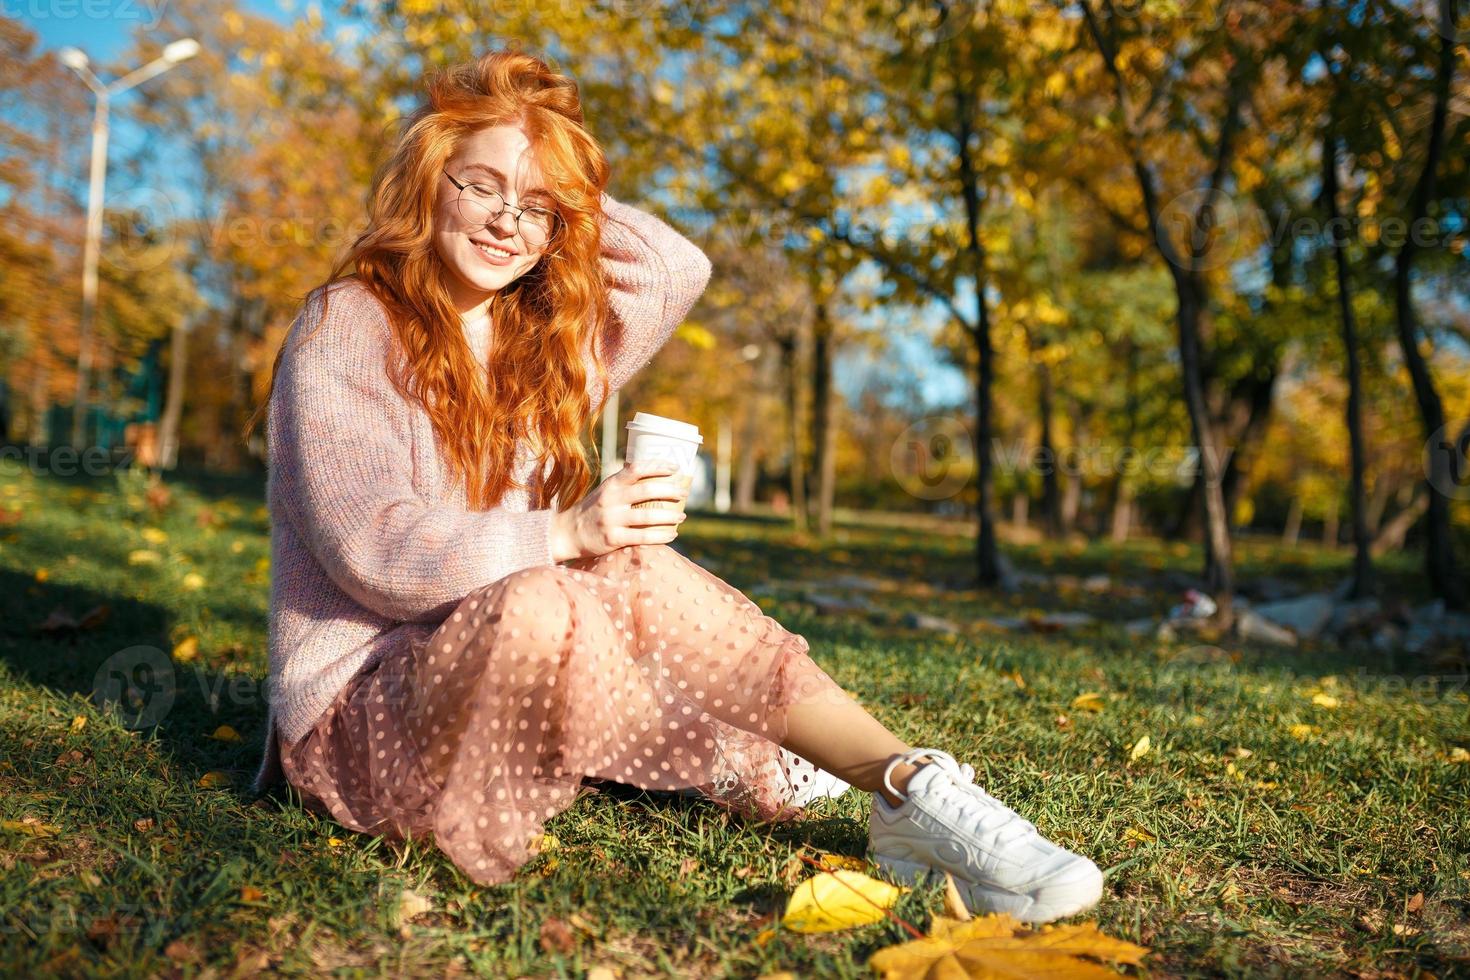 ritratti di un'affascinante ragazza dai capelli rossi con occhiali e un bel viso. ragazza in posa nel parco autunnale con un maglione e una gonna color corallo. foto